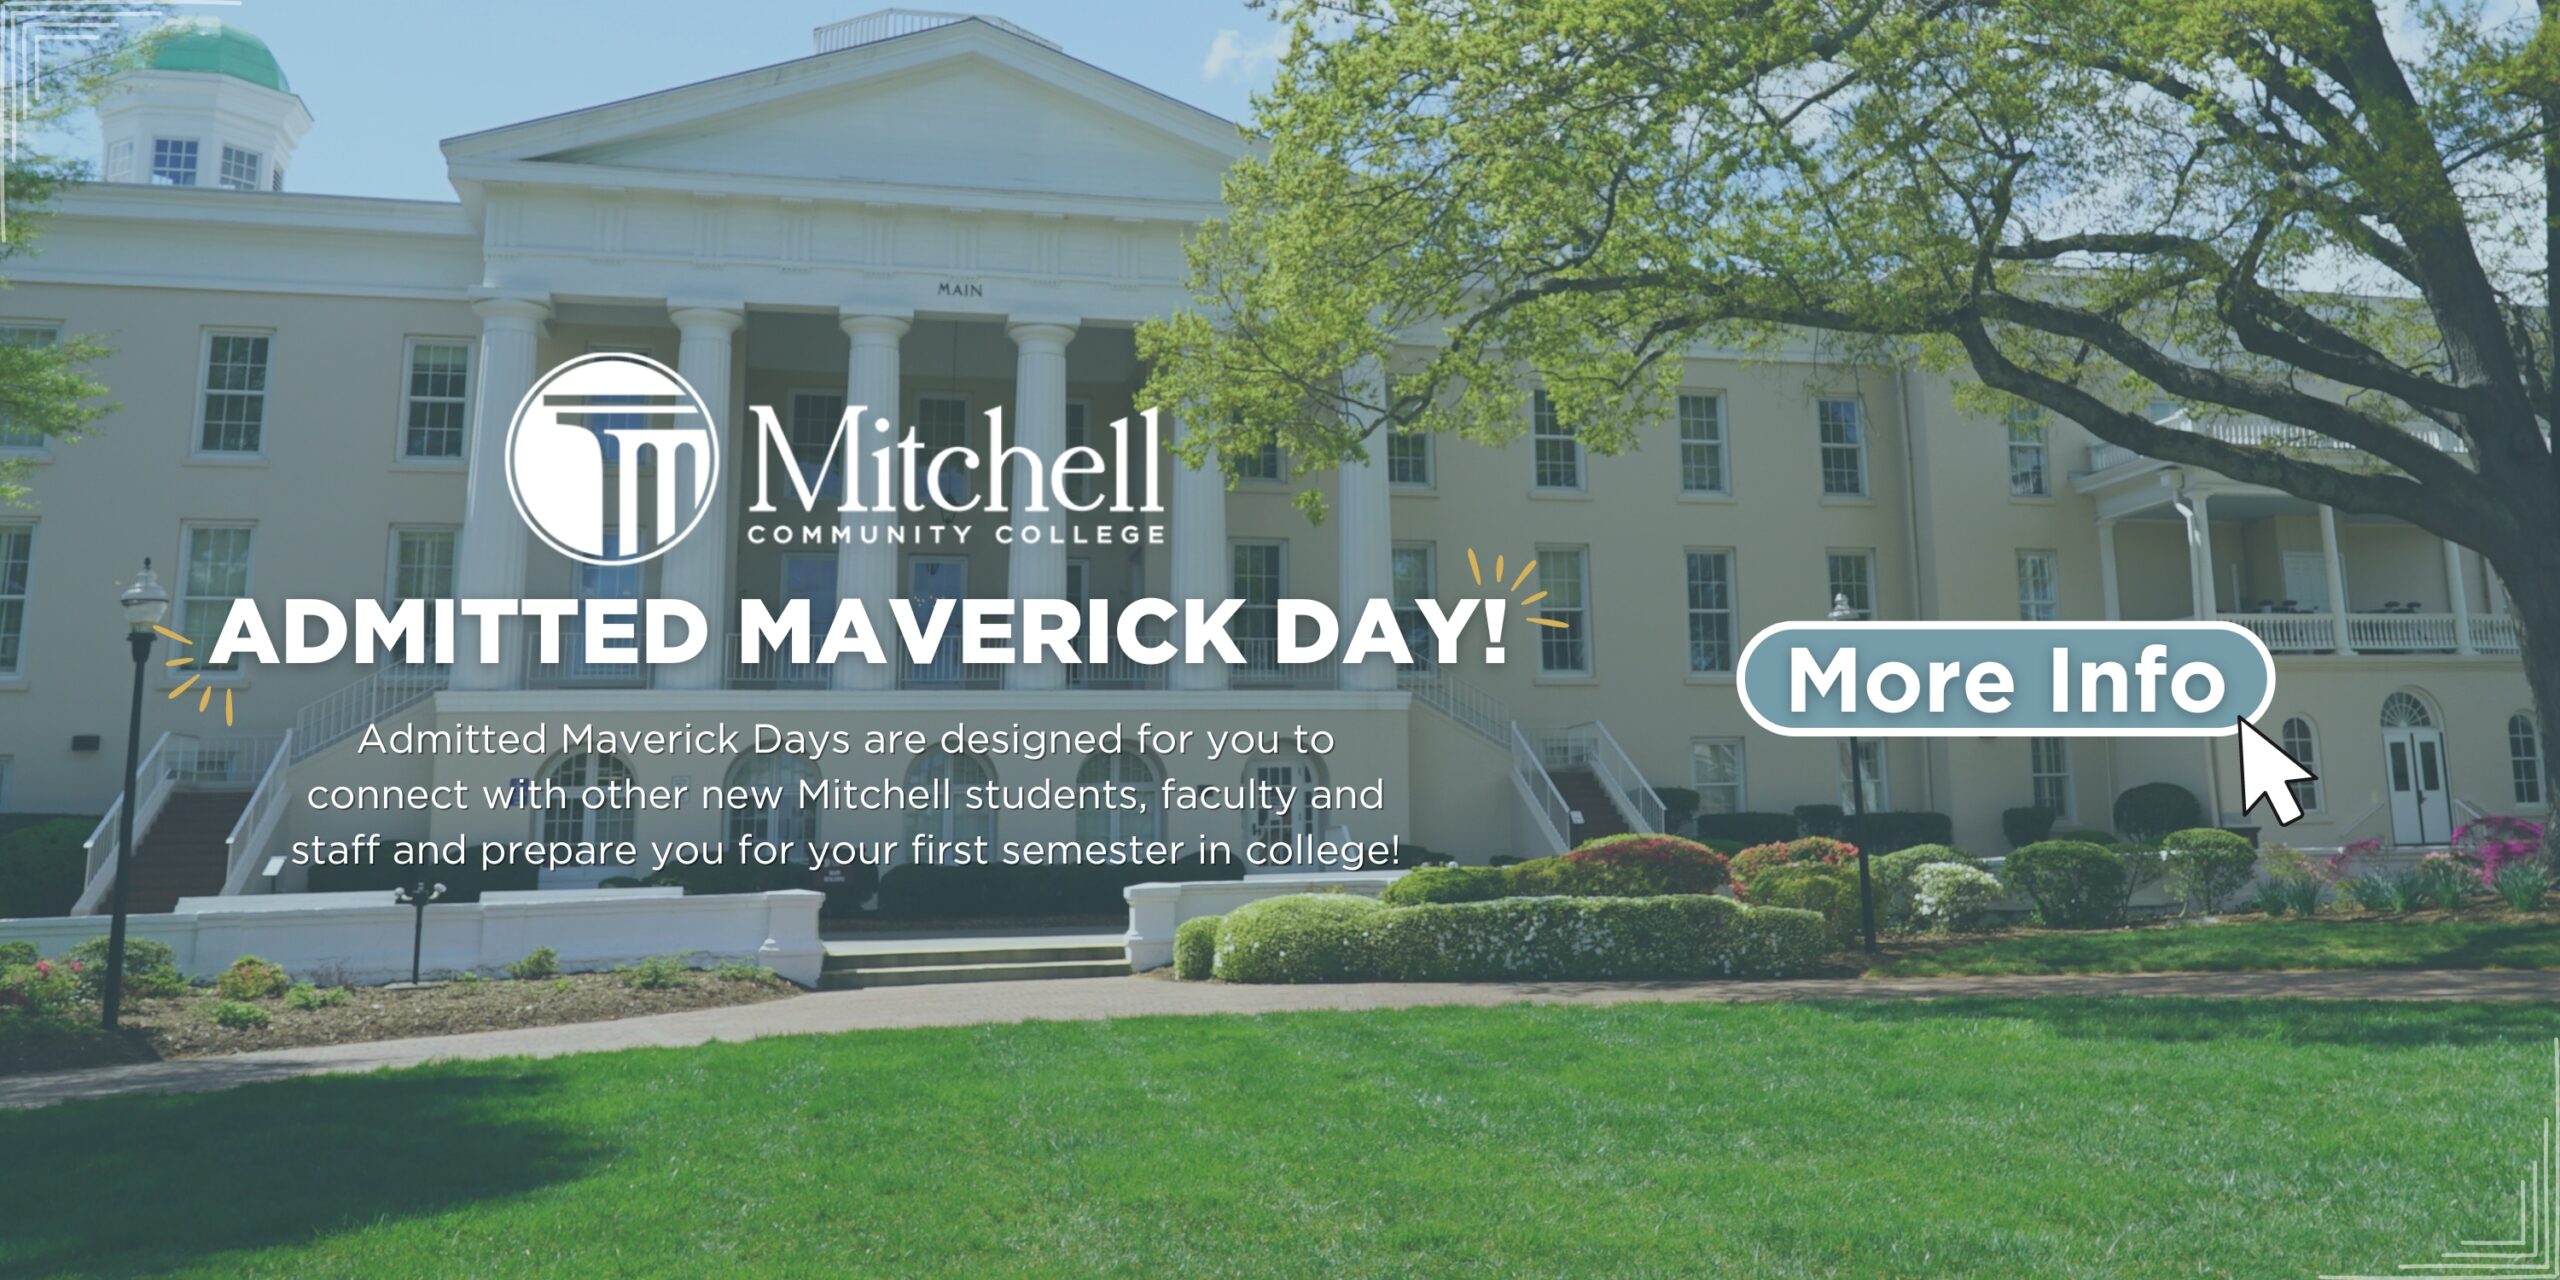 Klicken Sie auf dieses Banner, um mehr über den Admitted Maverick Day zu erfahren!